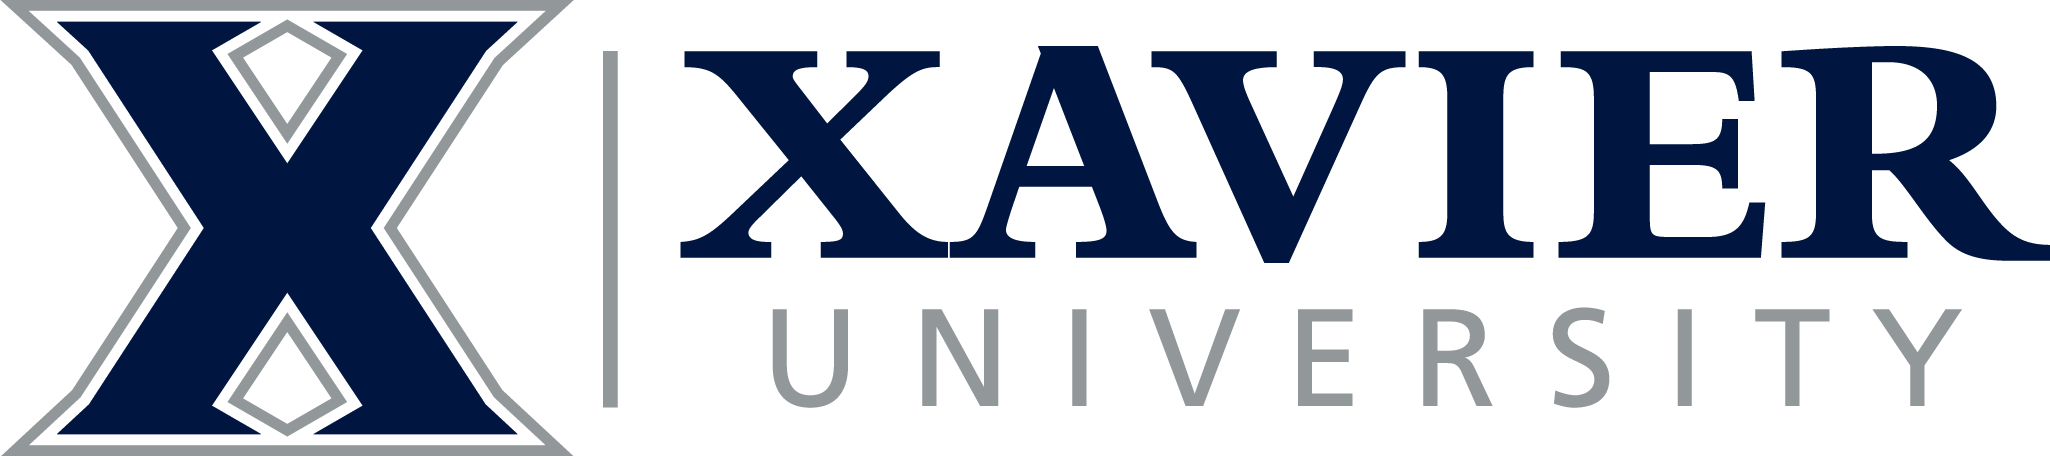 Xavier Logo - Xavier University - Planned Giving Home